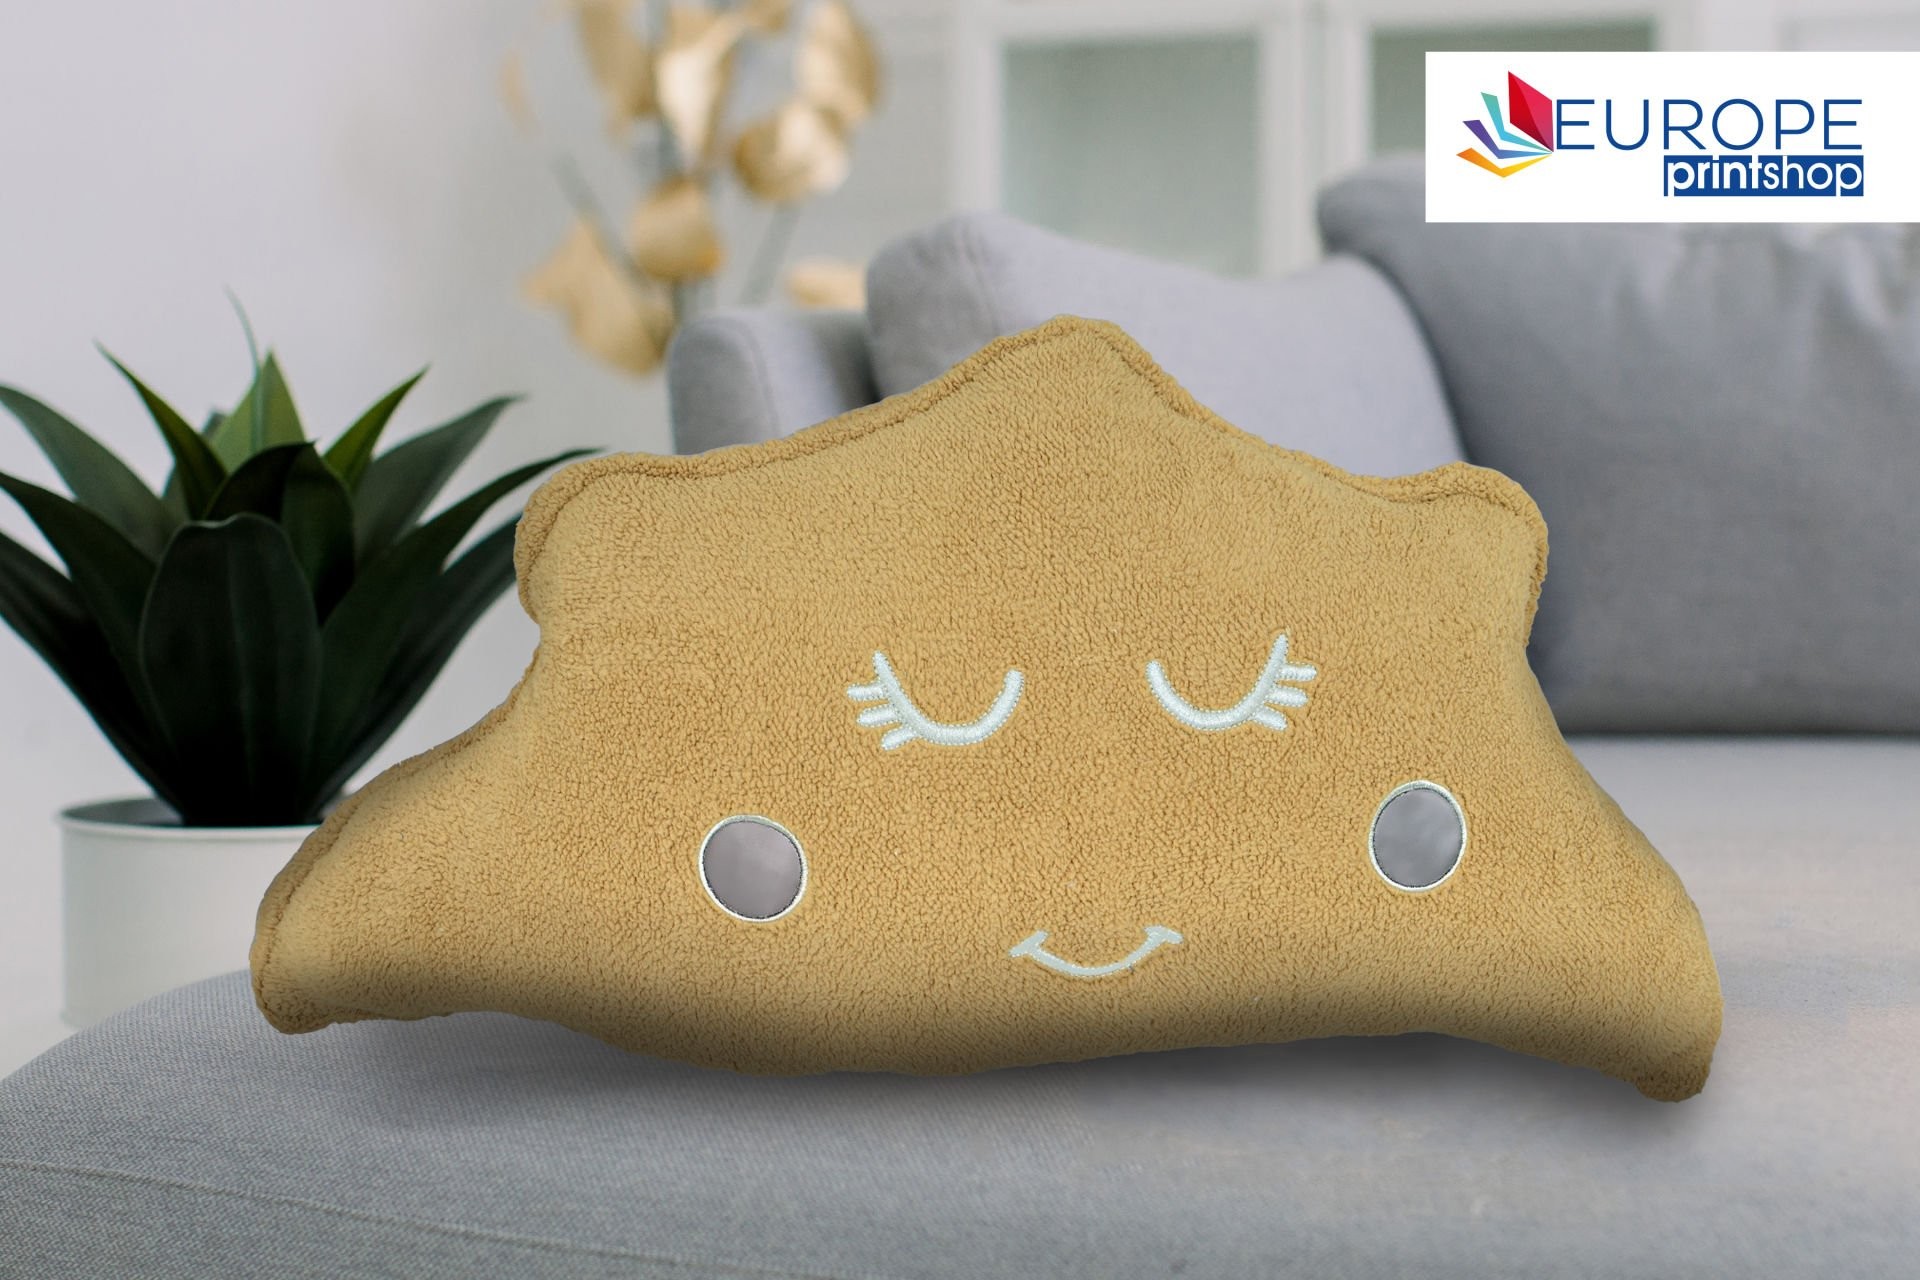 EUROPE PRINT SHOP Plush Decorative Cloud Pillow Toy